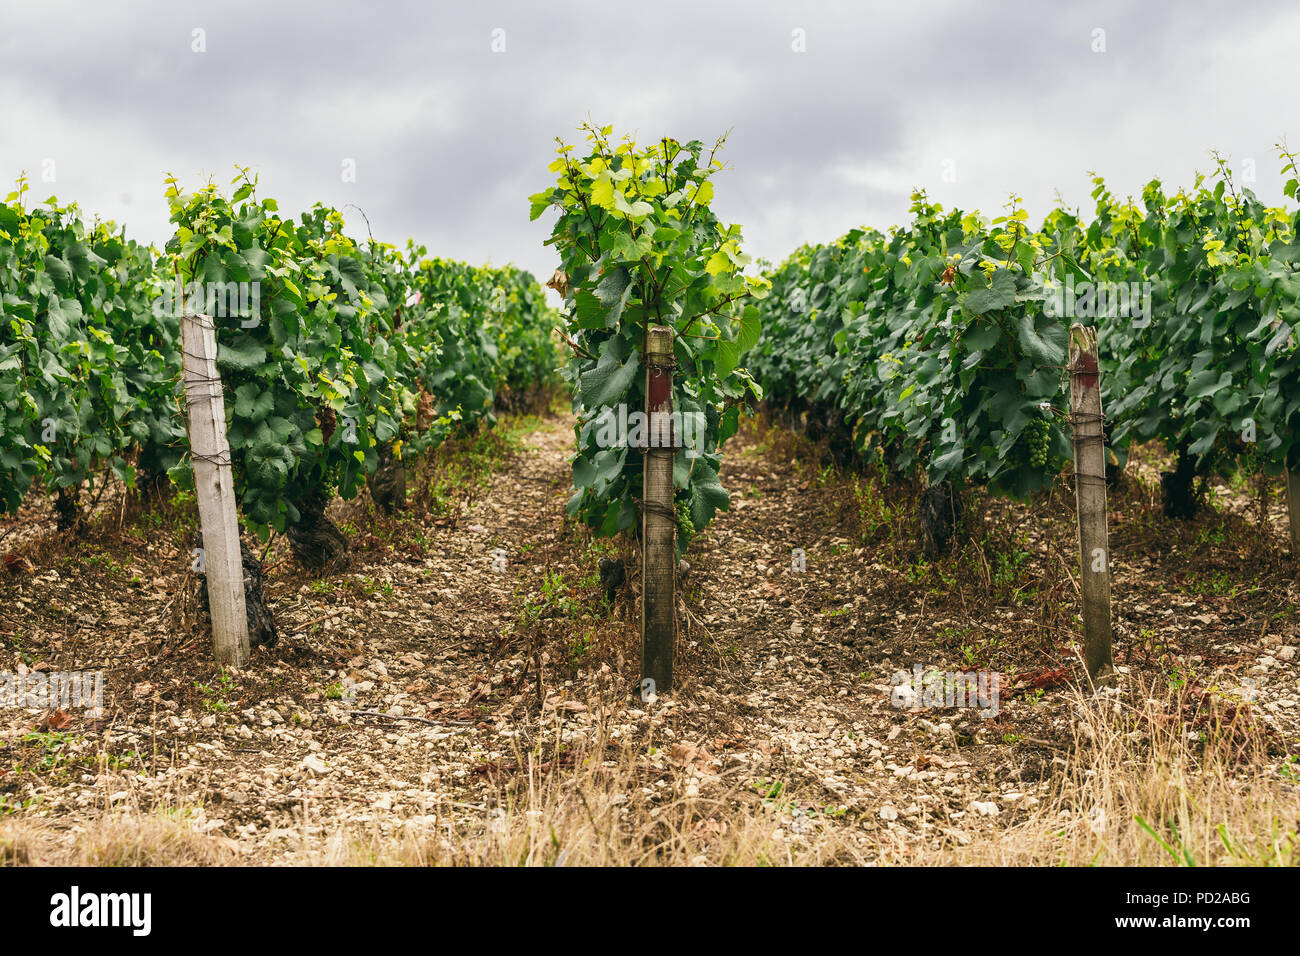 L'uva cresce in righe nel campo, Francia, la regione vinicola di Chablis Foto Stock